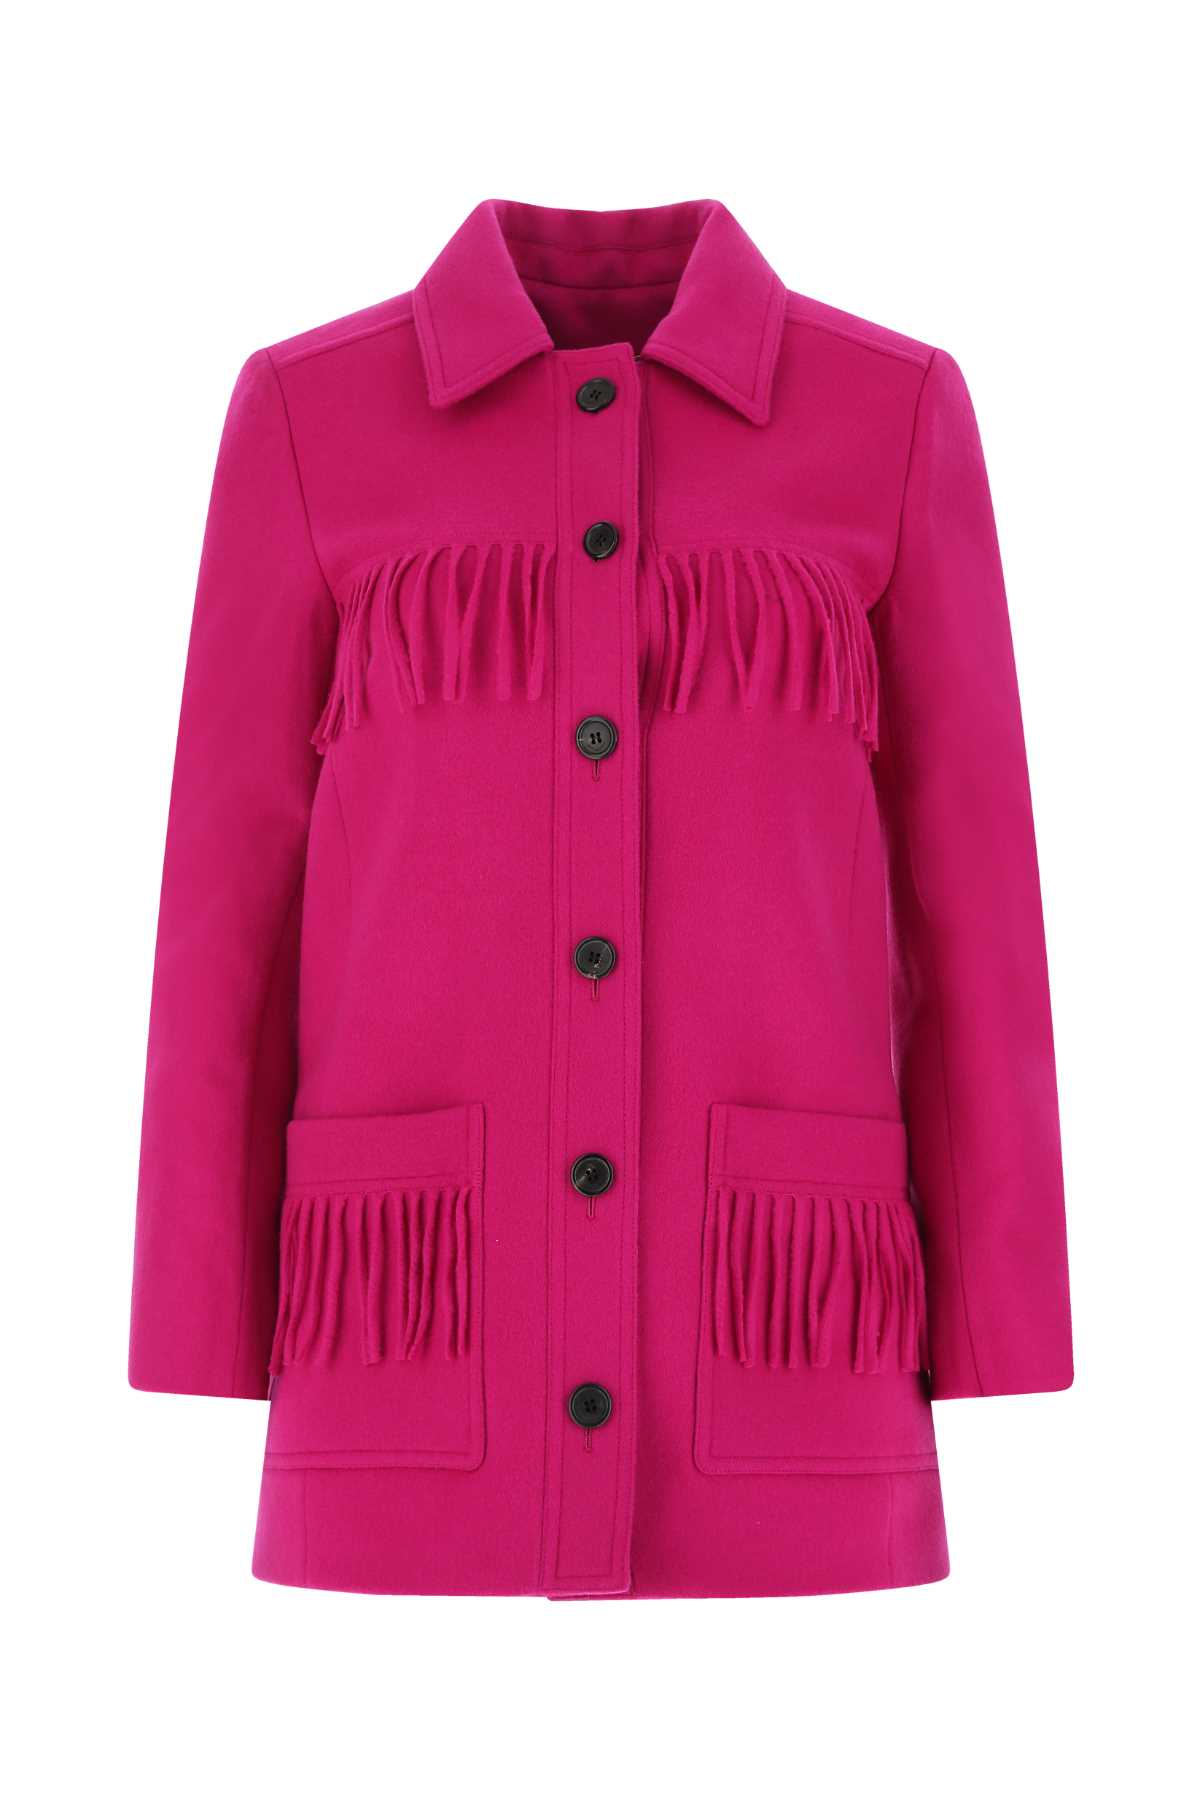 Saint Laurent Fuchsia Wool Blend Blazer In Pink